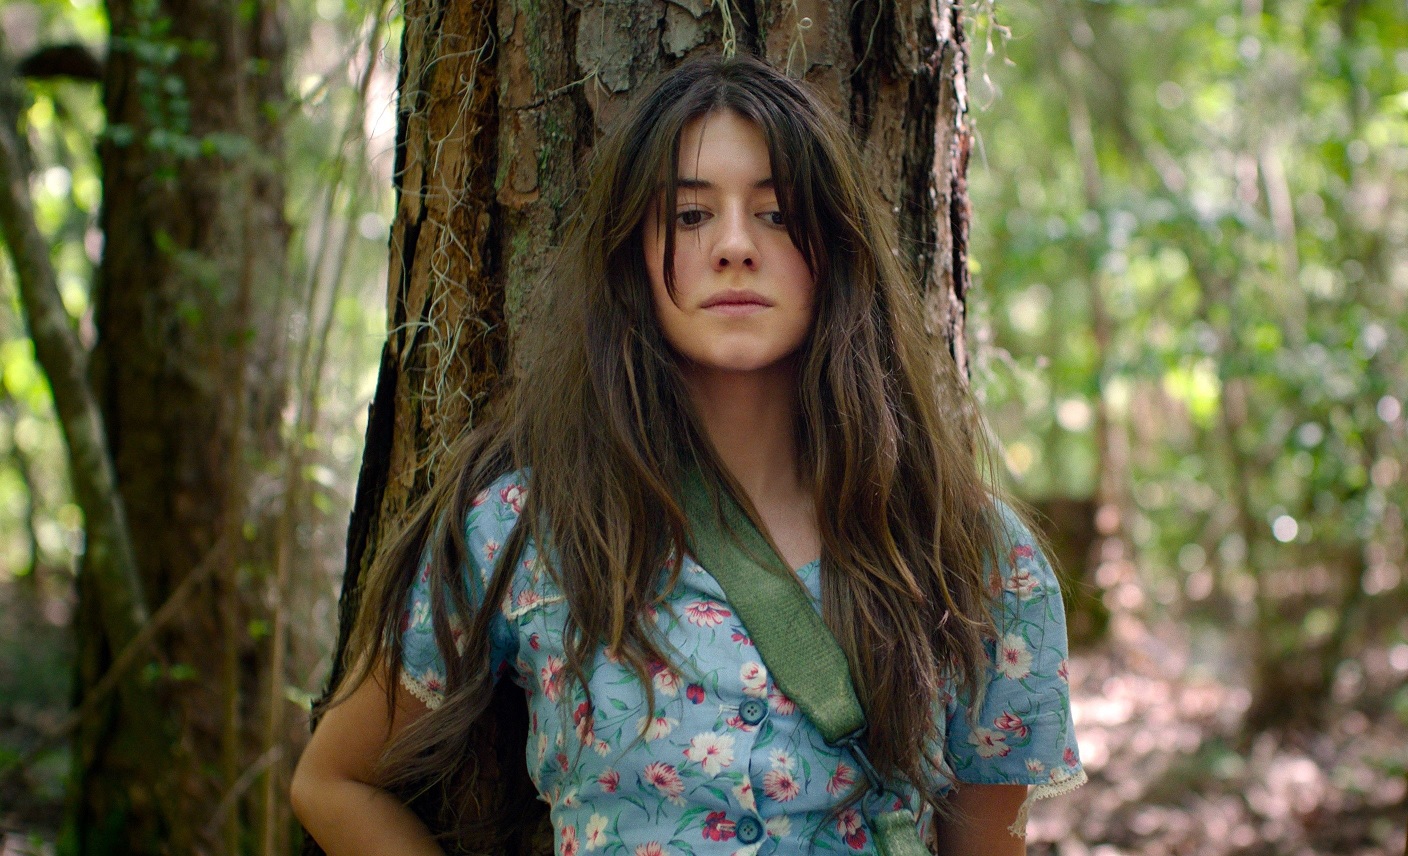 「ザリガニの鳴くところ」湿地帯で暮らす孤独な少女の驚異のサバイバル・サスペンス

